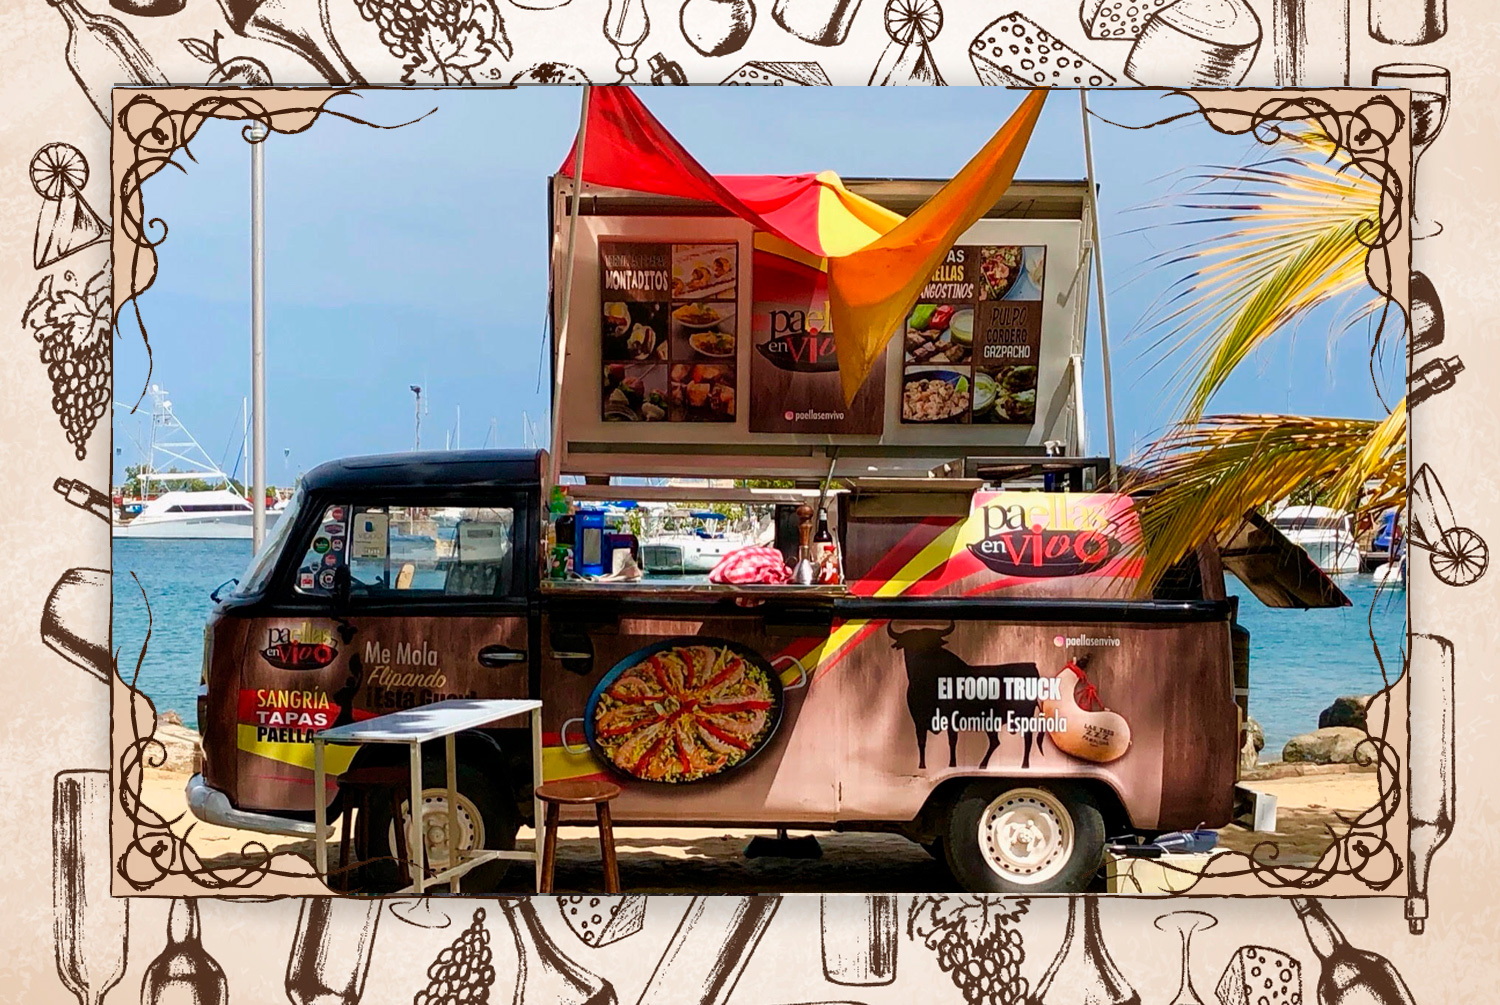 Secreto bien guardado: “Lola, su hermoso y colorido foodtruck es el primer camión de comida española en Venezuela”.